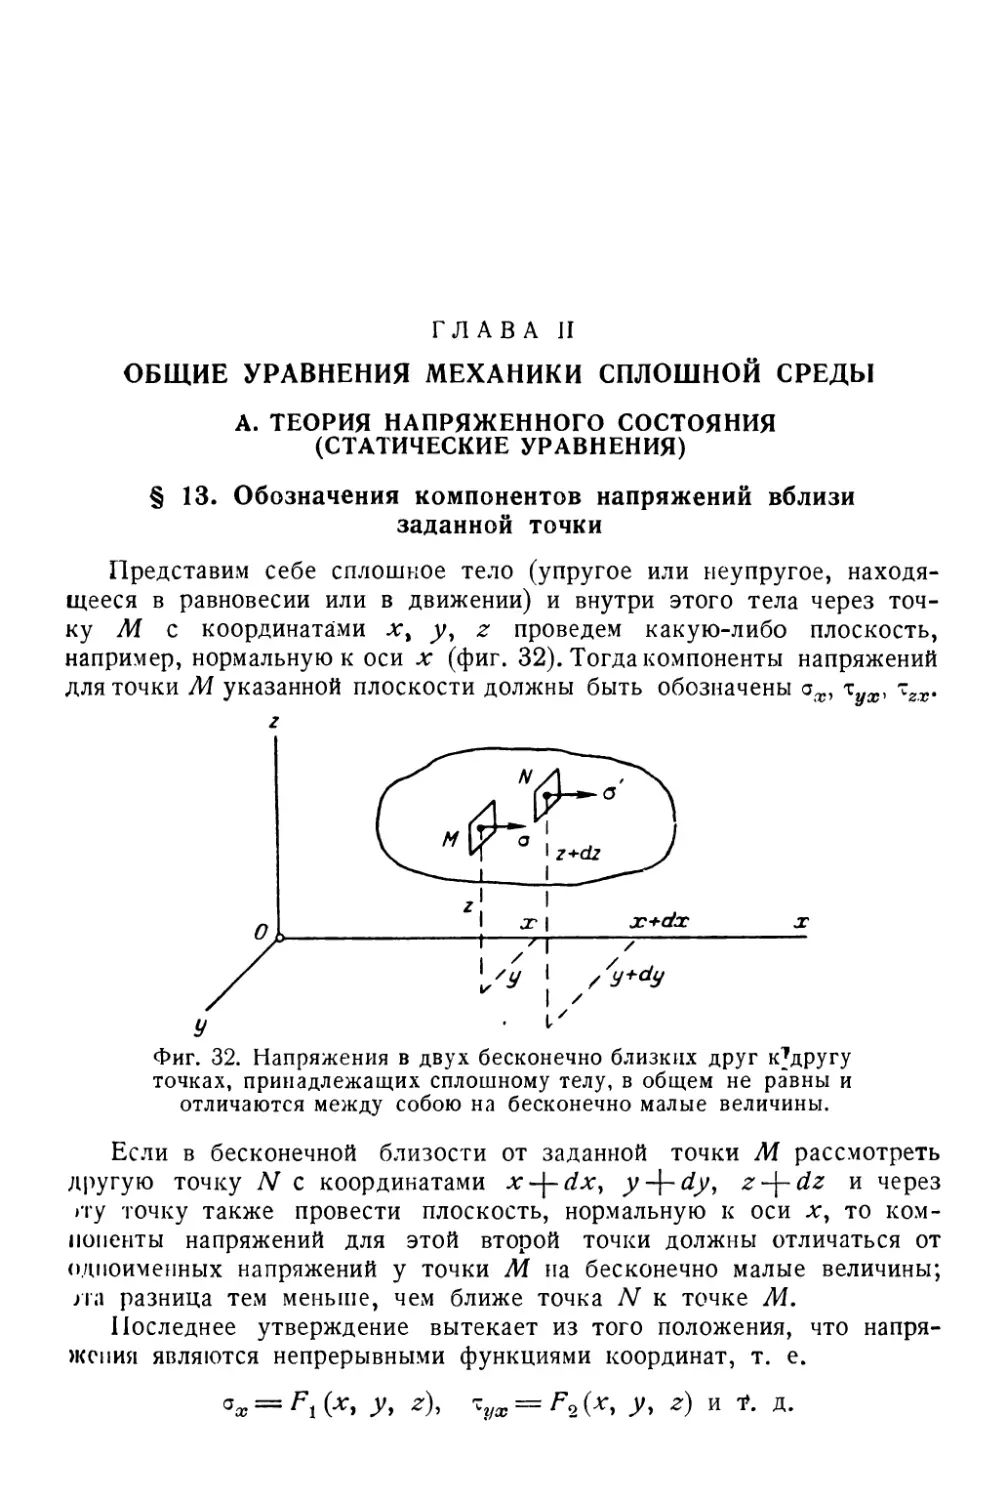 Глава II. Общие уравнения механики сплошной среды
§ 13. Обозначения компонентов напряжений вблизи заданной точки